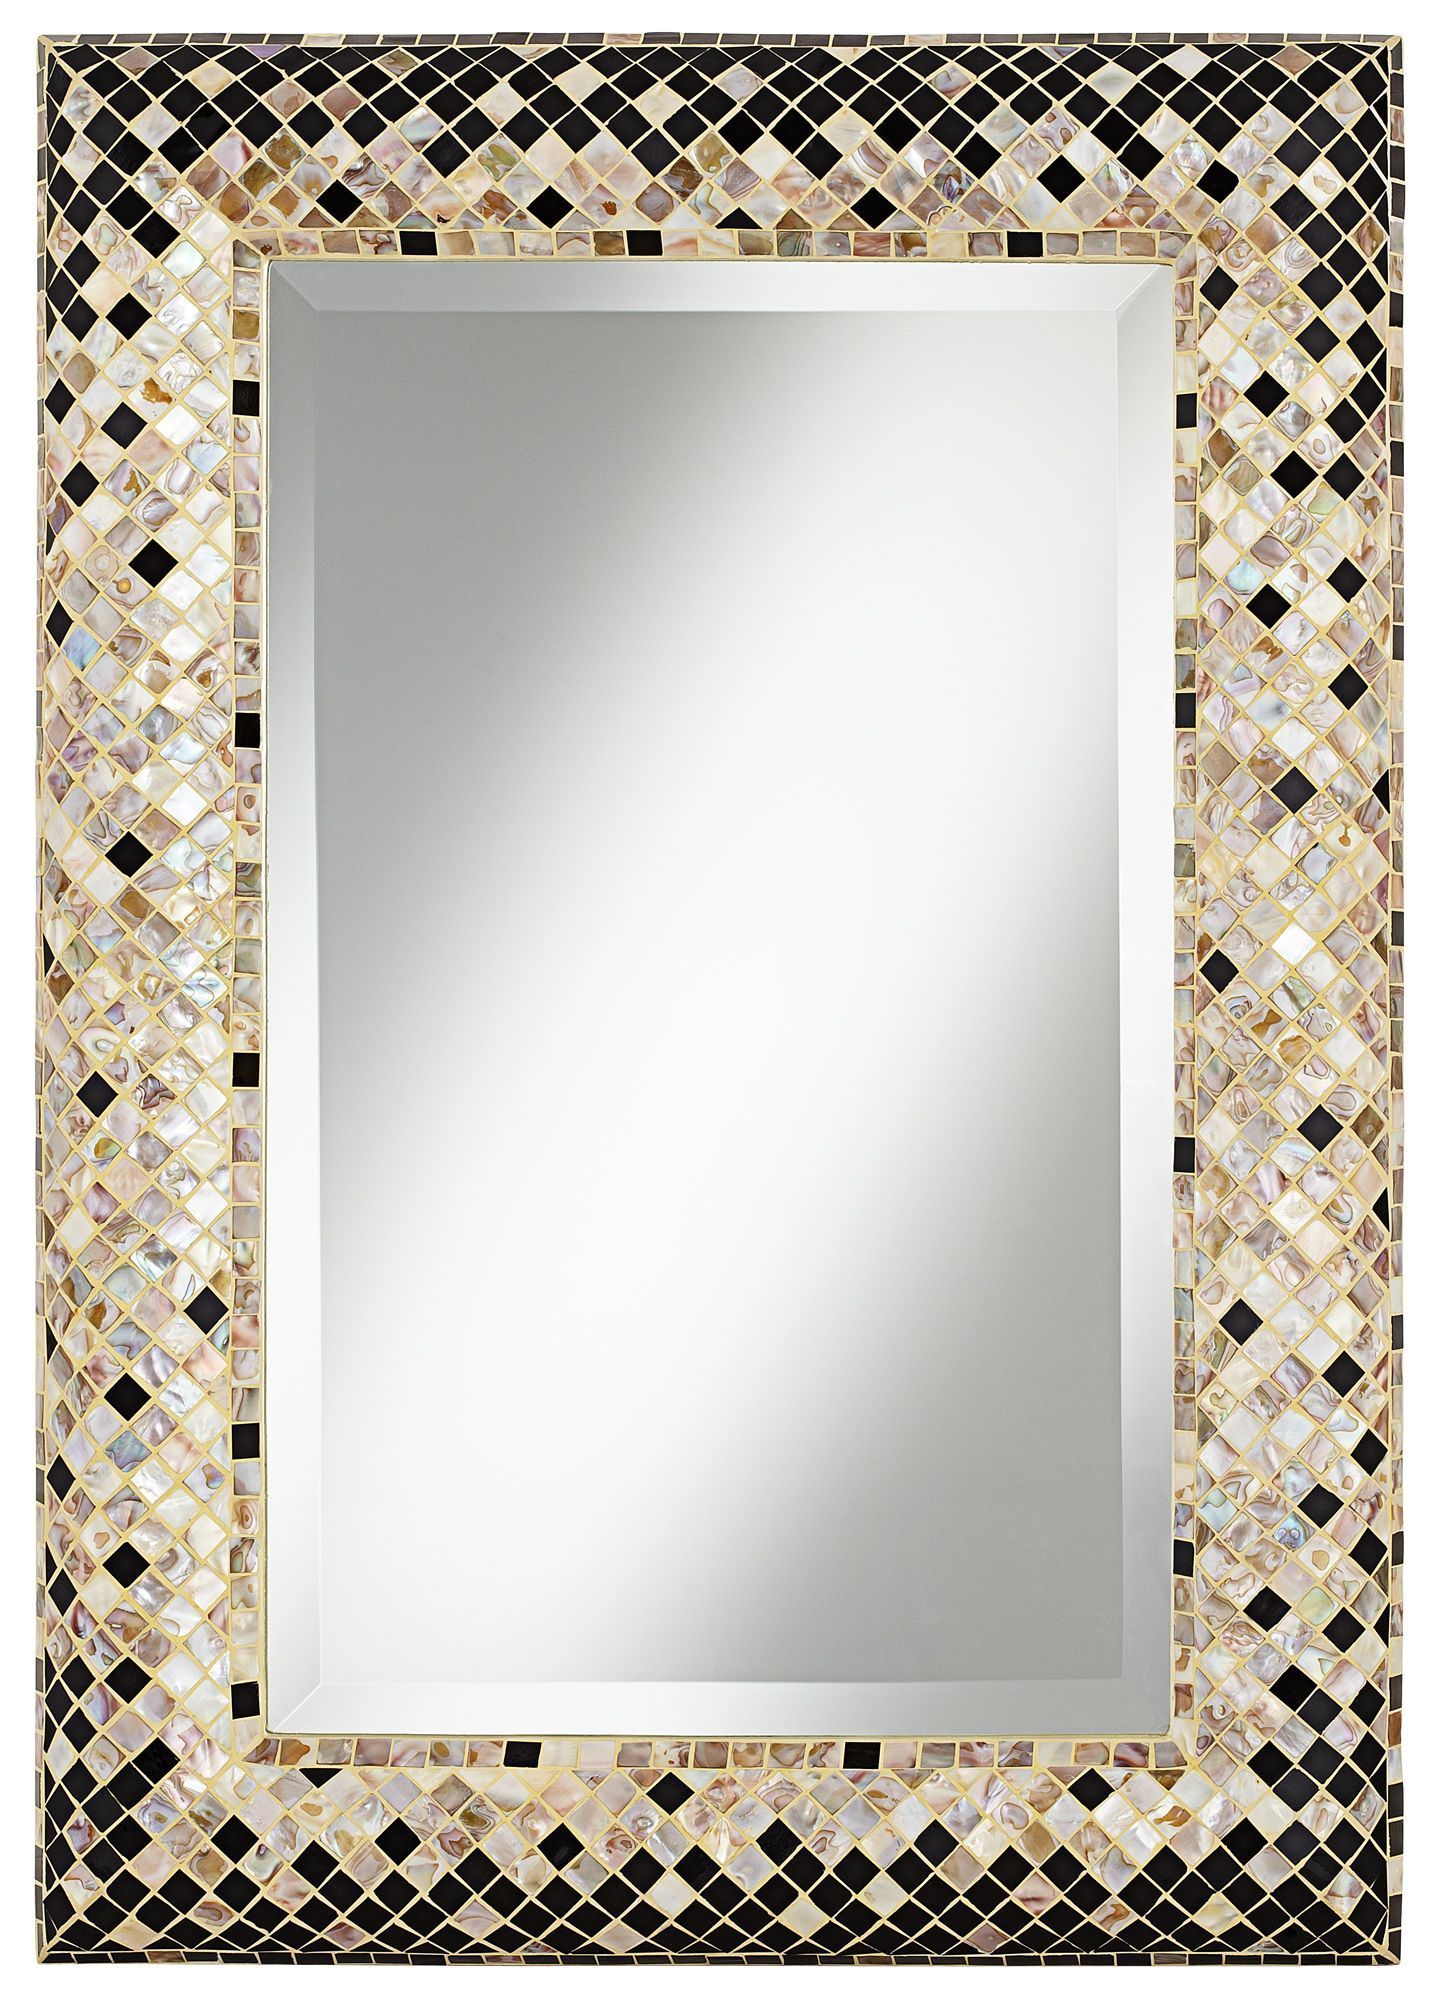 Checkered Sea Shell 33" Mosaic Wall Mirror – Eurostylelighting # Regarding Shell Mosaic Wall Mirrors (View 1 of 15)